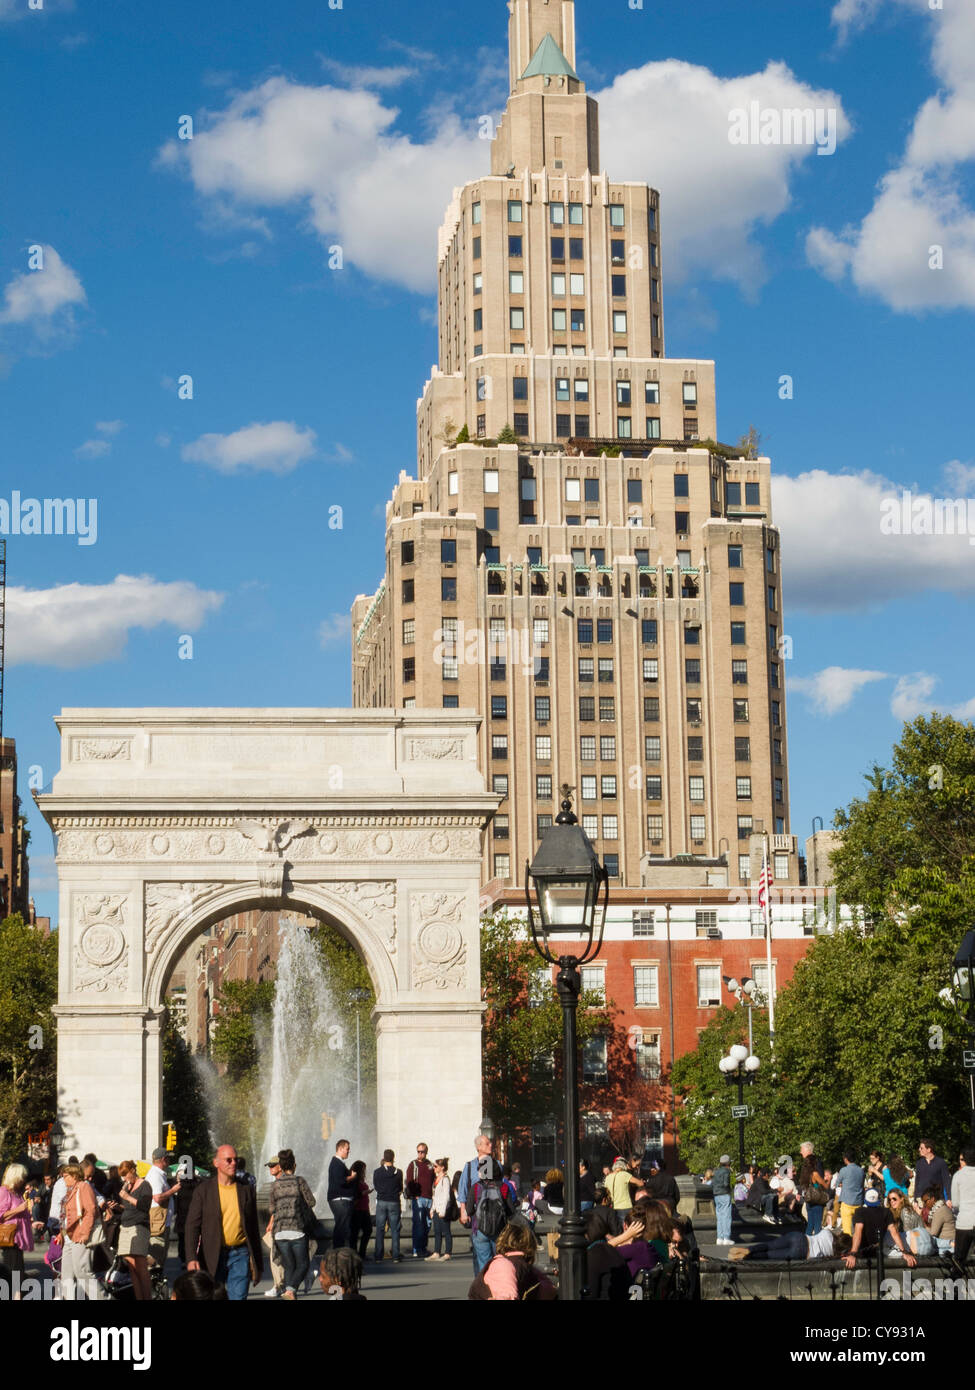 Washington Square Arch, Fontaine et de la foule, Washington Square Park, Greenwich Village, NEW YORK Banque D'Images